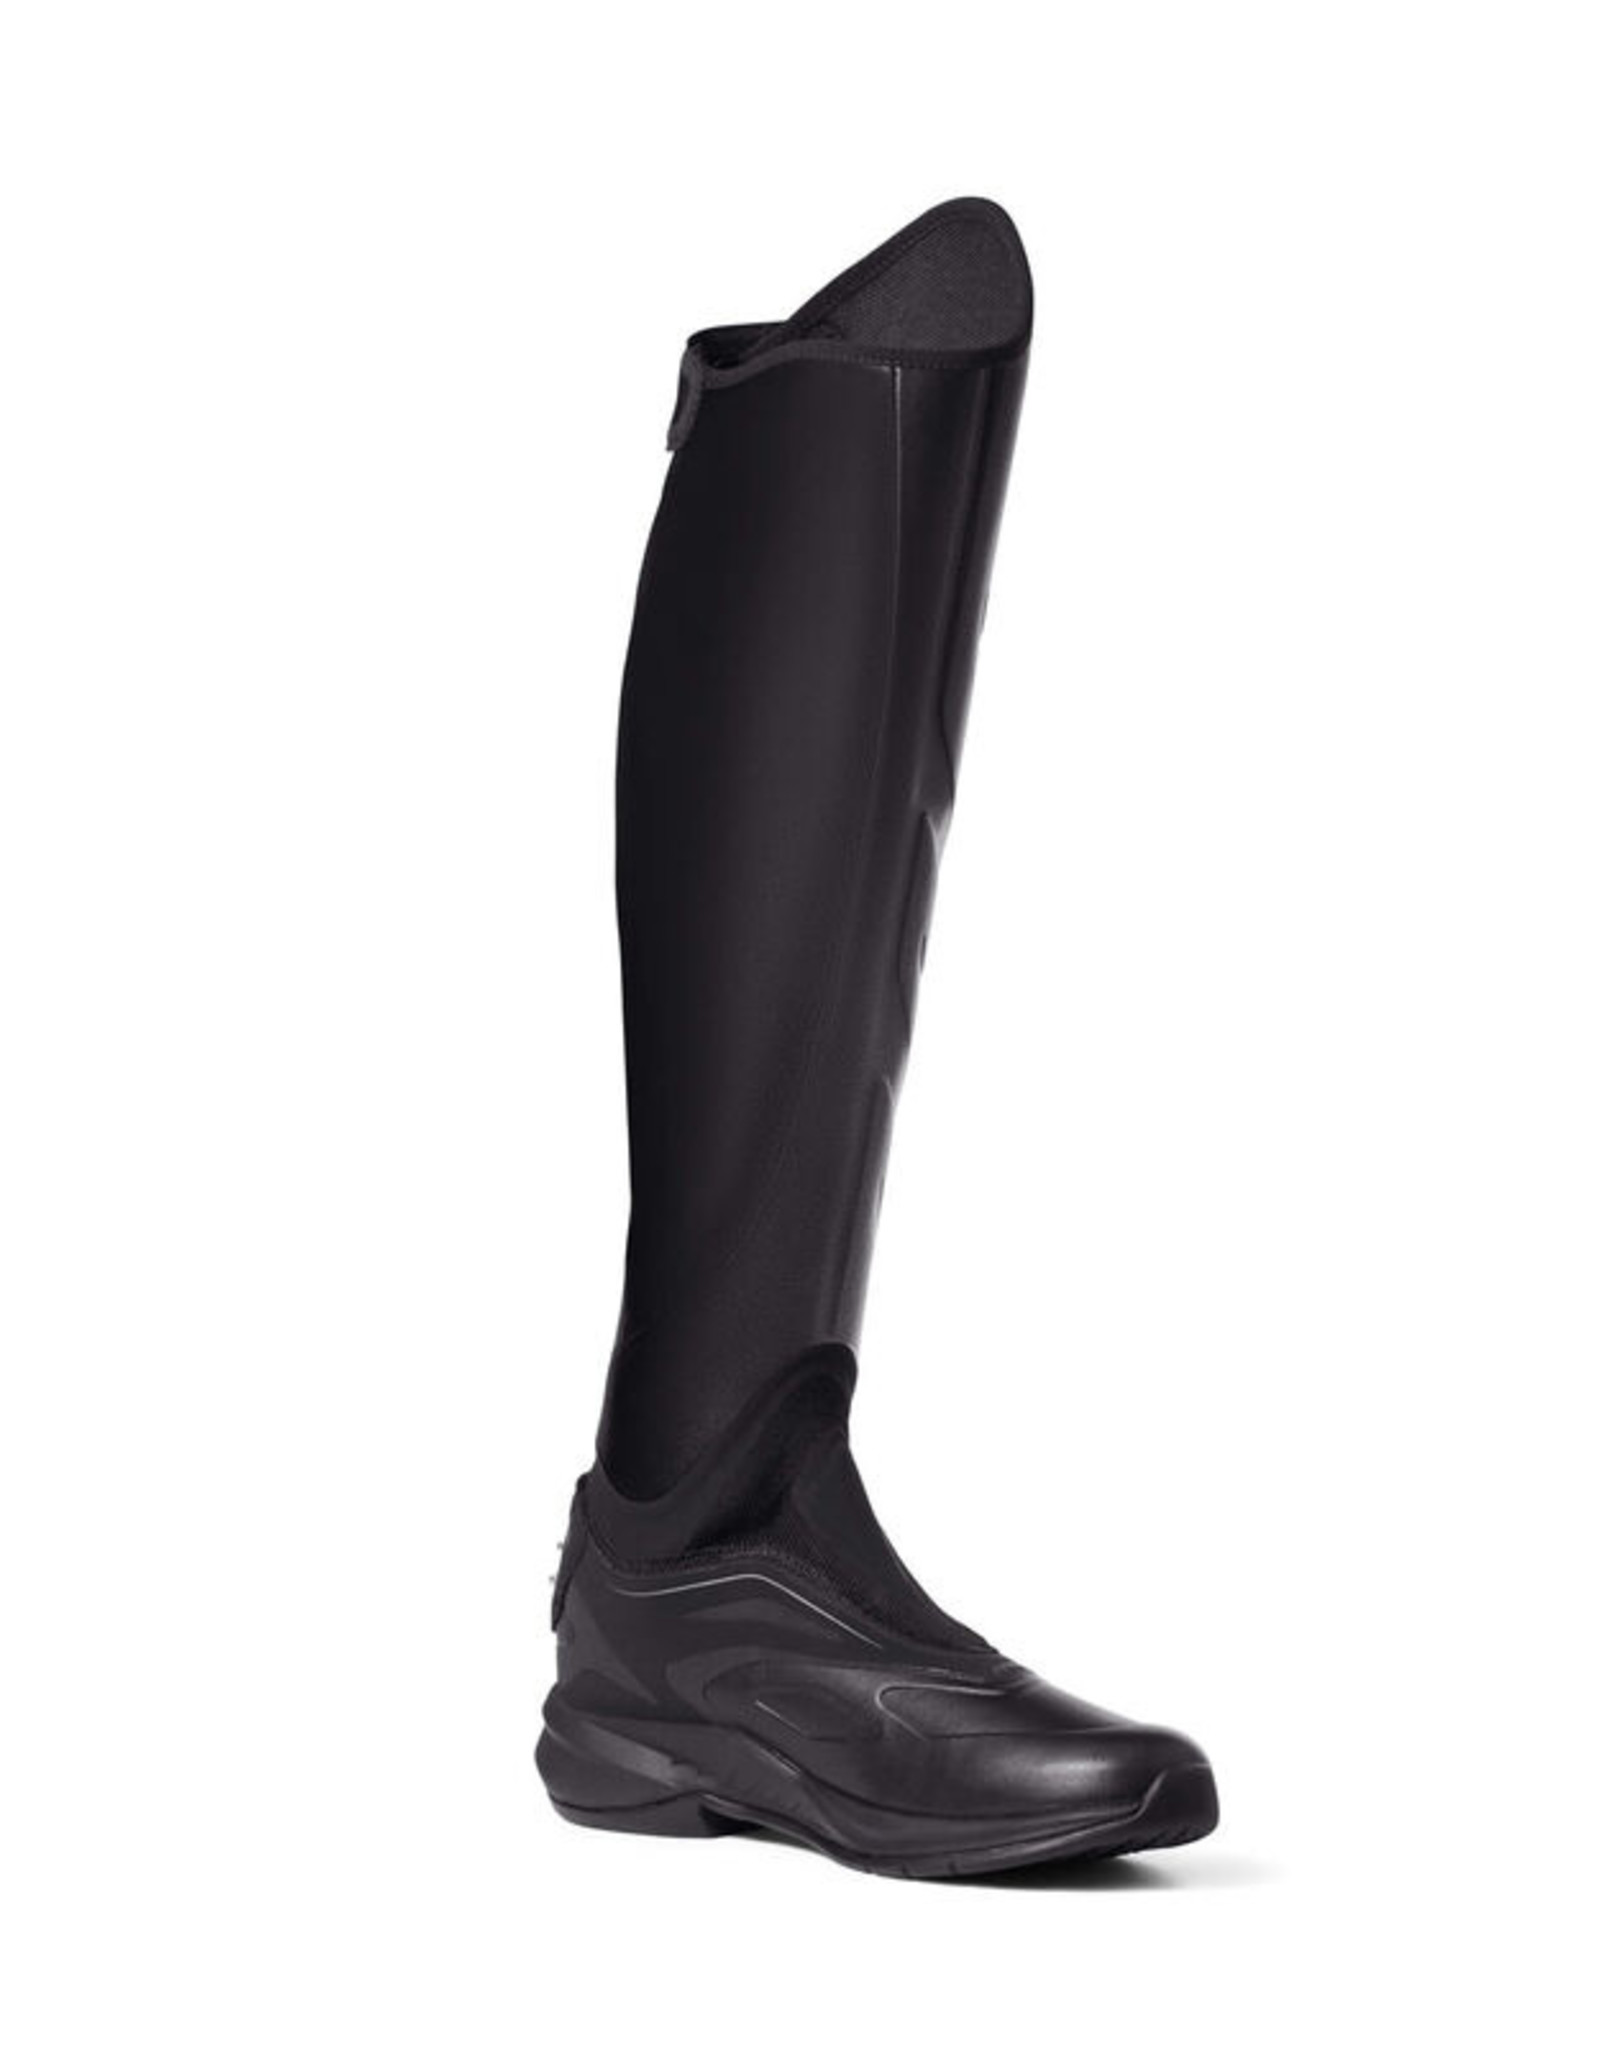 Ariat Ladies' Ascent Dress Tall Boot